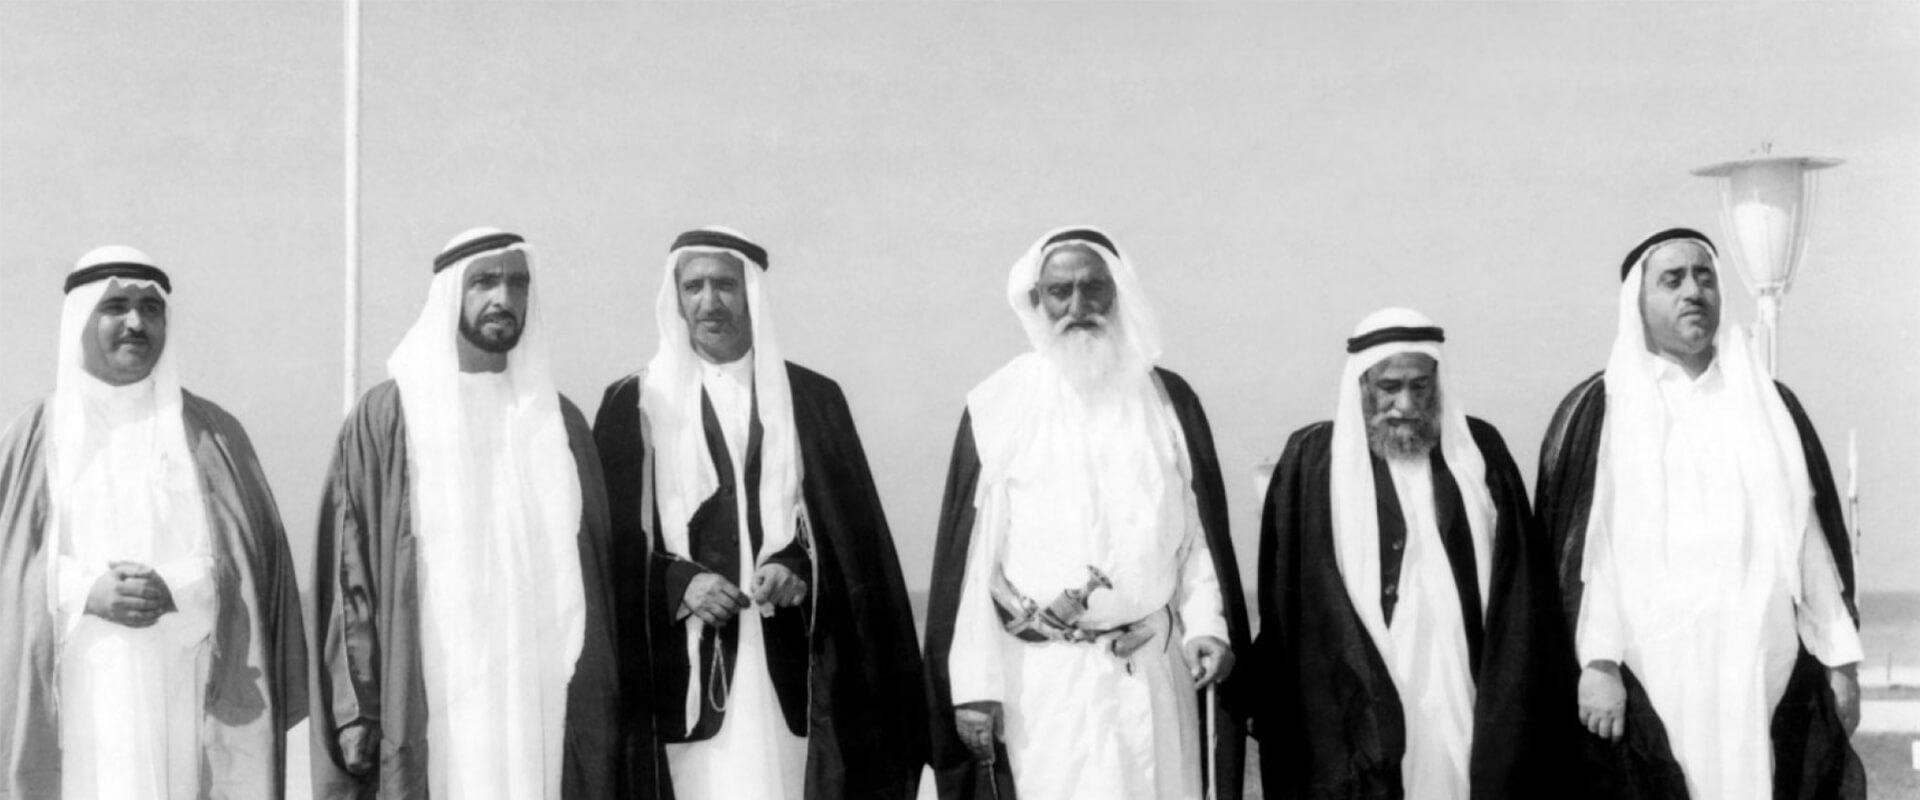  شيوخ الإمارات الست أمام علم دولة الإمارات العربية المتحدة في الثاني من ديسمبر 1971، بالأبيض والأسود.